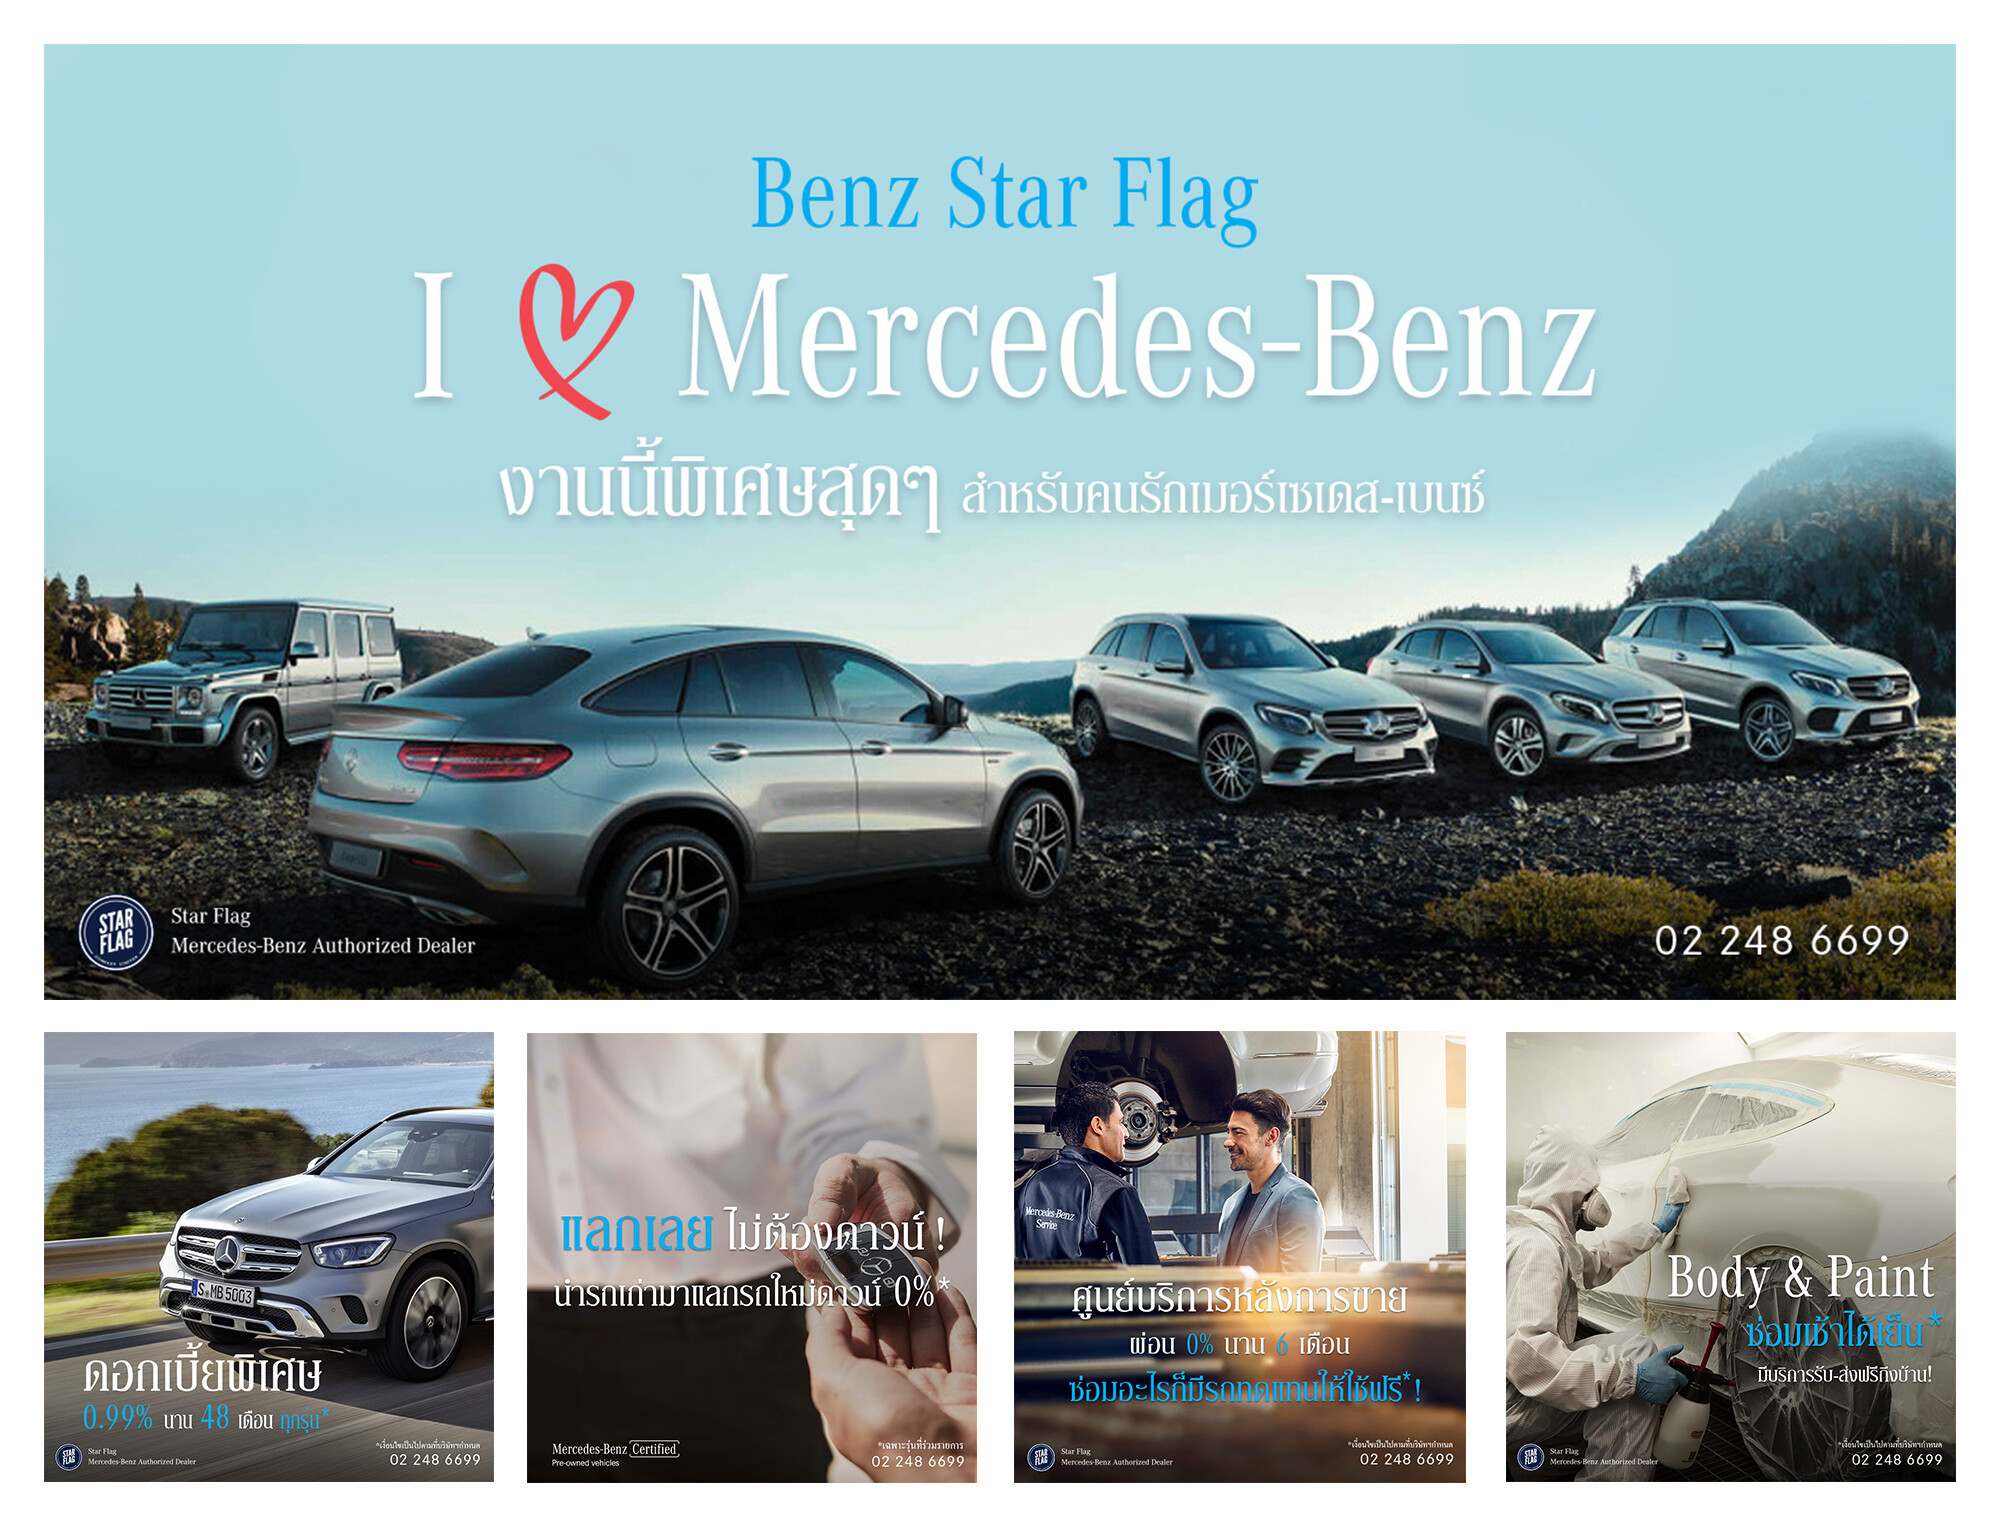 เบนซ์ สตาร์แฟลก เปิดตัว “I Love Mercedes-Benz งานนี้พิเศษสุดๆ พิเศษทุกรุ่น ทุกแผนก” แคมเปญที่รวมครบจบ เพื่อคนรักเมอร์เซเดส-เบนซ์